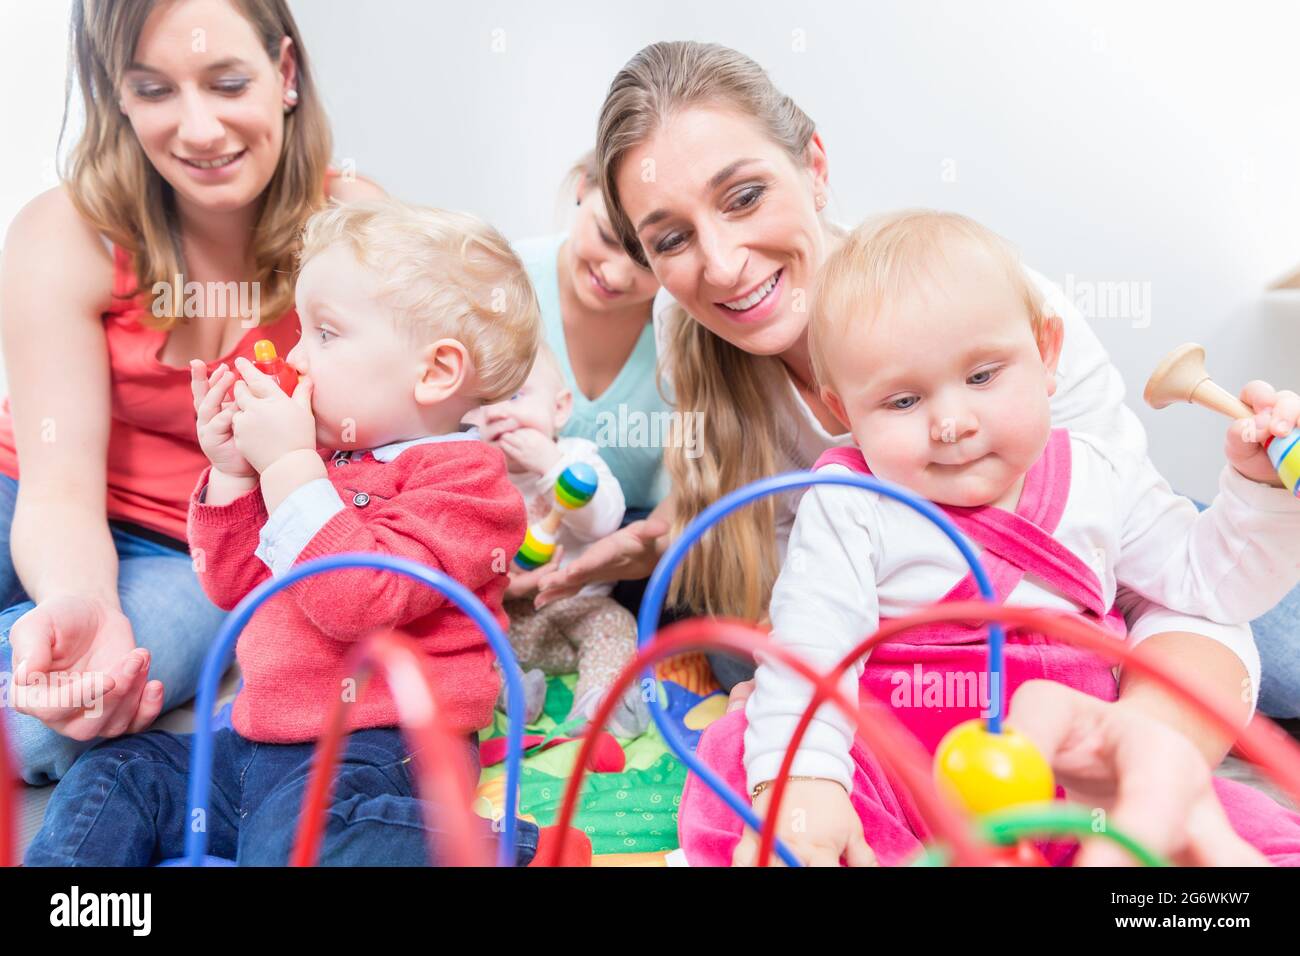 Eine Gruppe von glücklichen jungen Müttern, die ihre süßen und gesunden Babys beobachten, während sie mit bunten Spielsachen in einer modernen Kindertagesstätte spielen Stockfoto